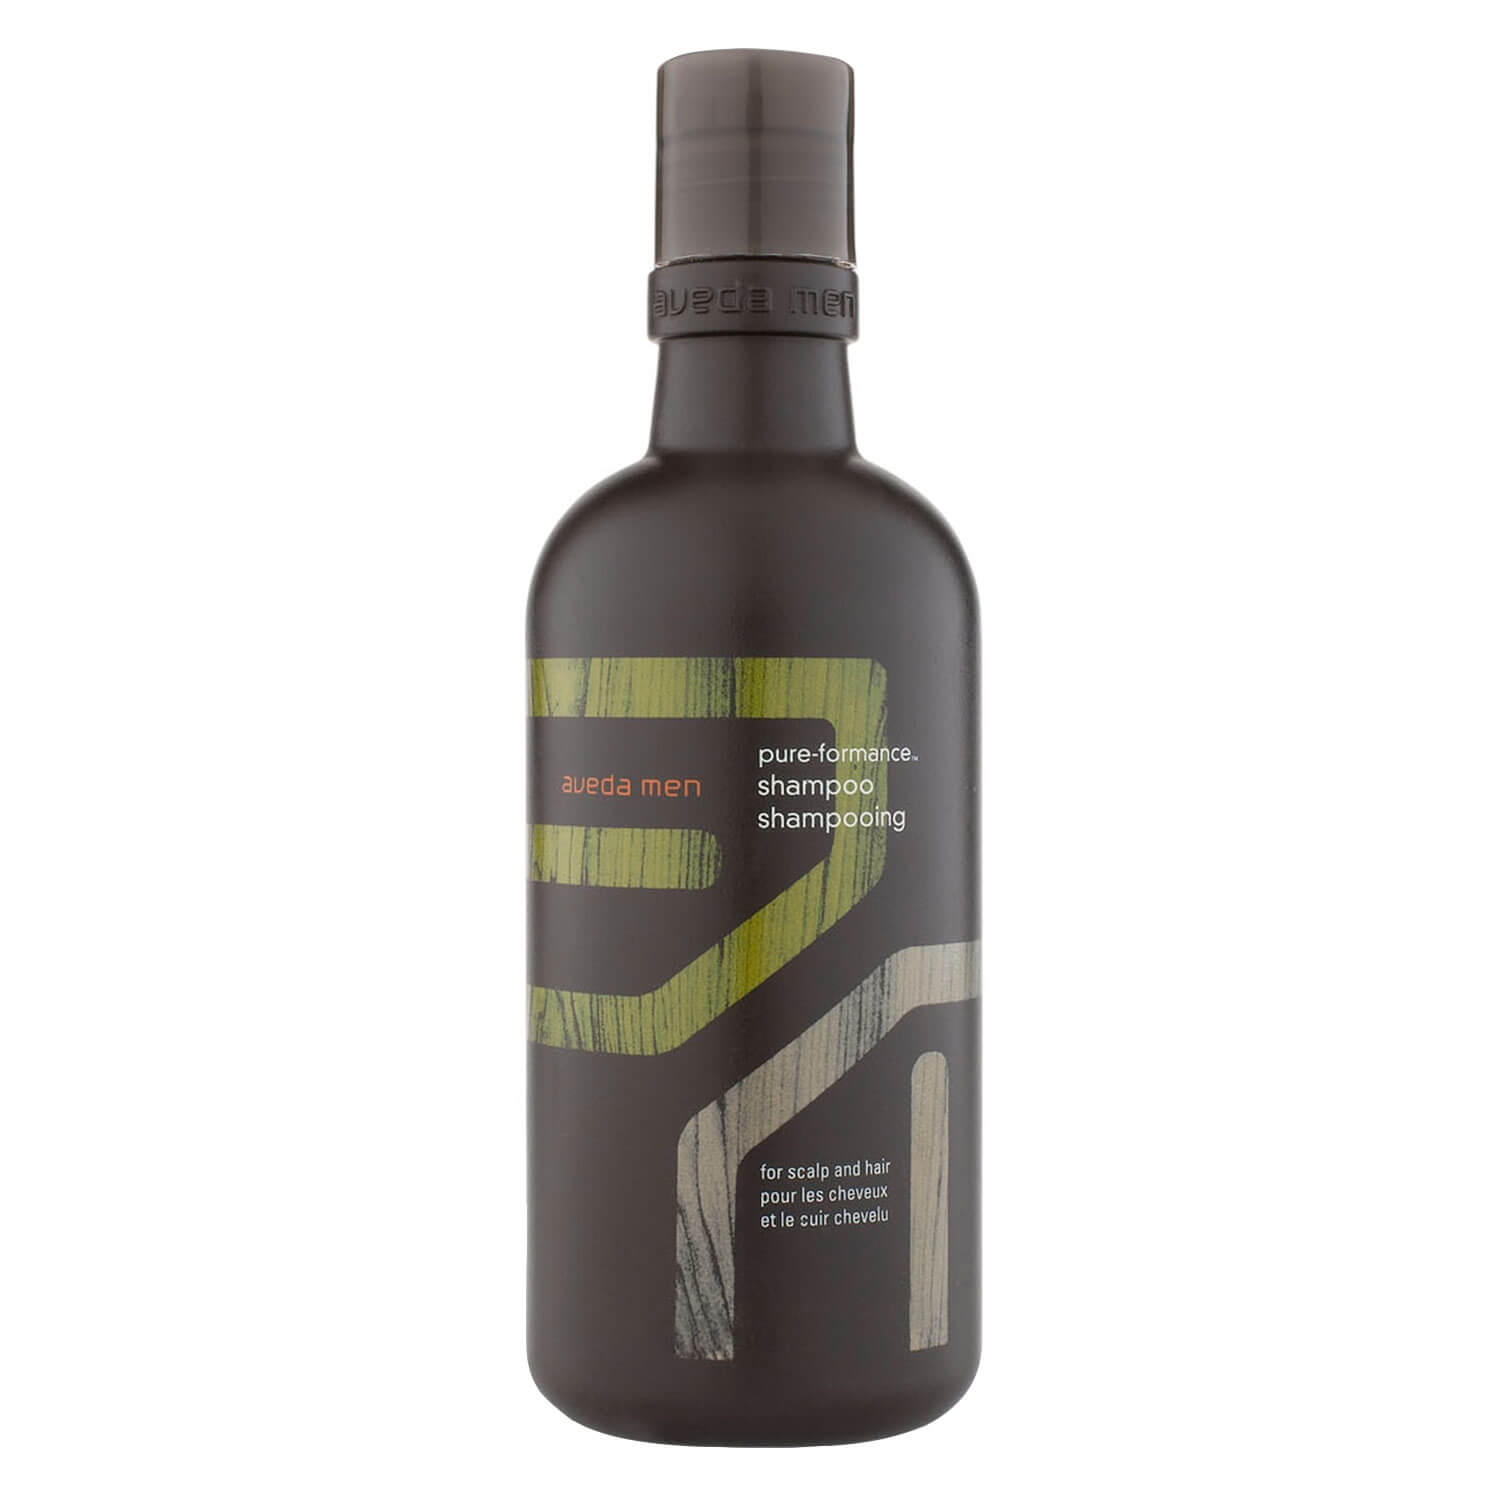 Produktbild von men pure-formance - shampoo